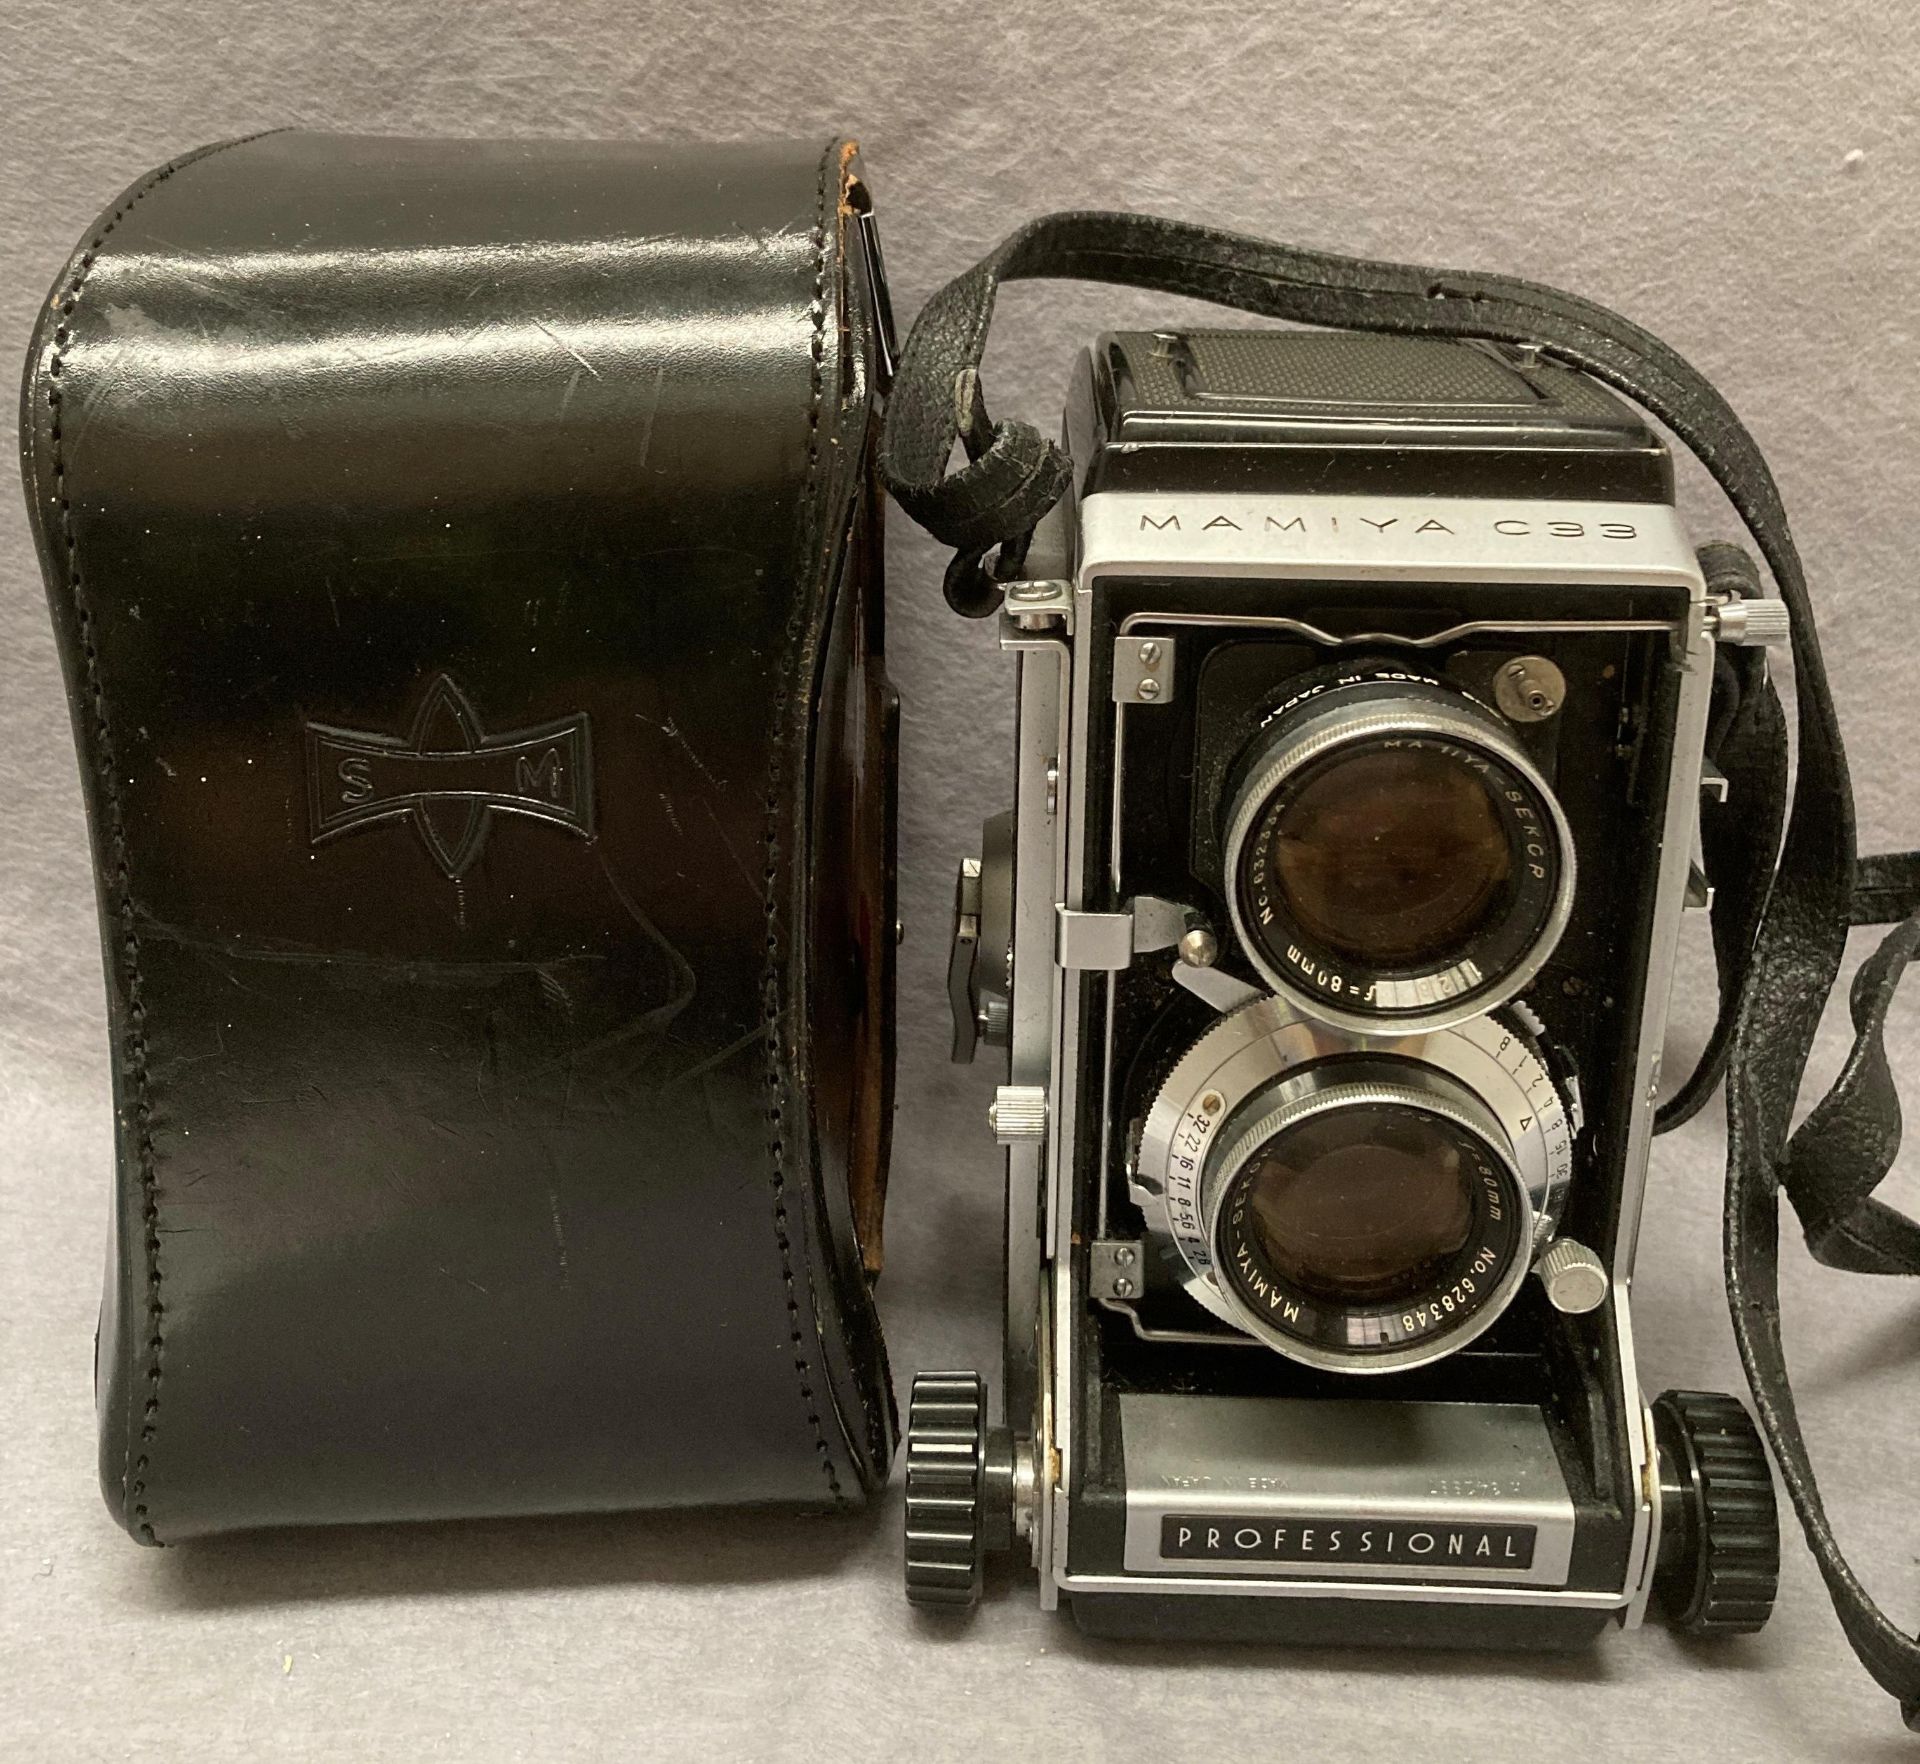 A Maniya C33 Professional camera with Mamiya-Sekor 1:2. - Image 2 of 6